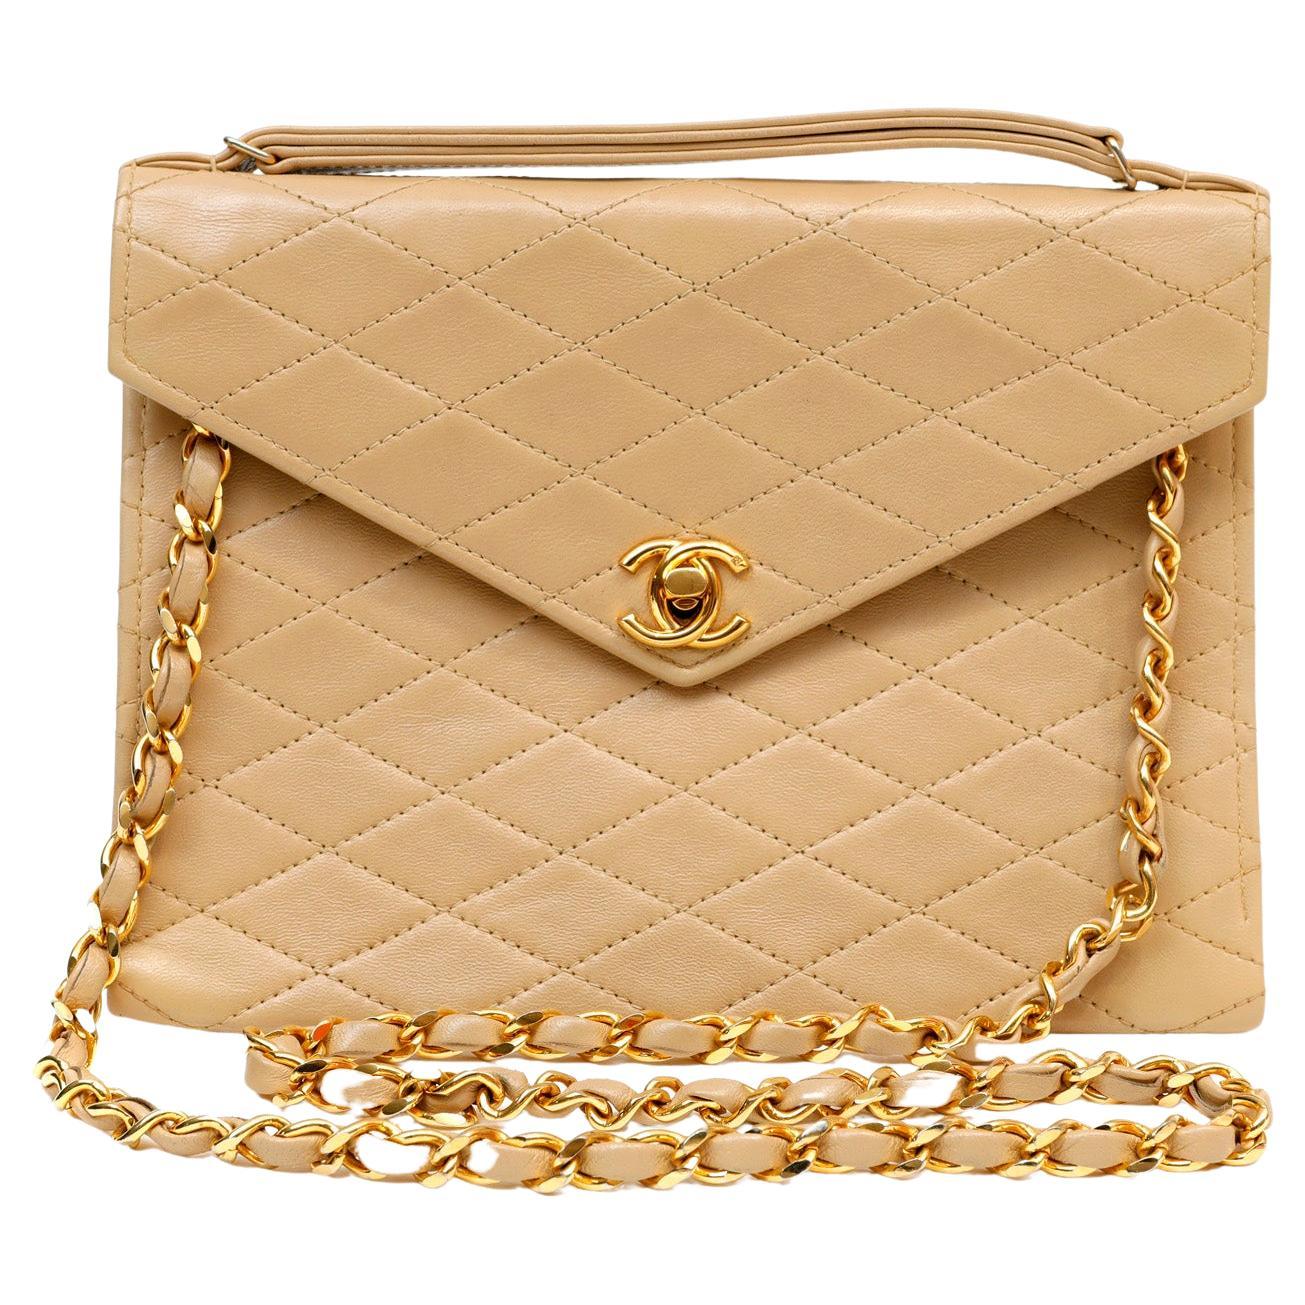 Chanel Vintage Beige Leather Envelope Flap Bag For Sale